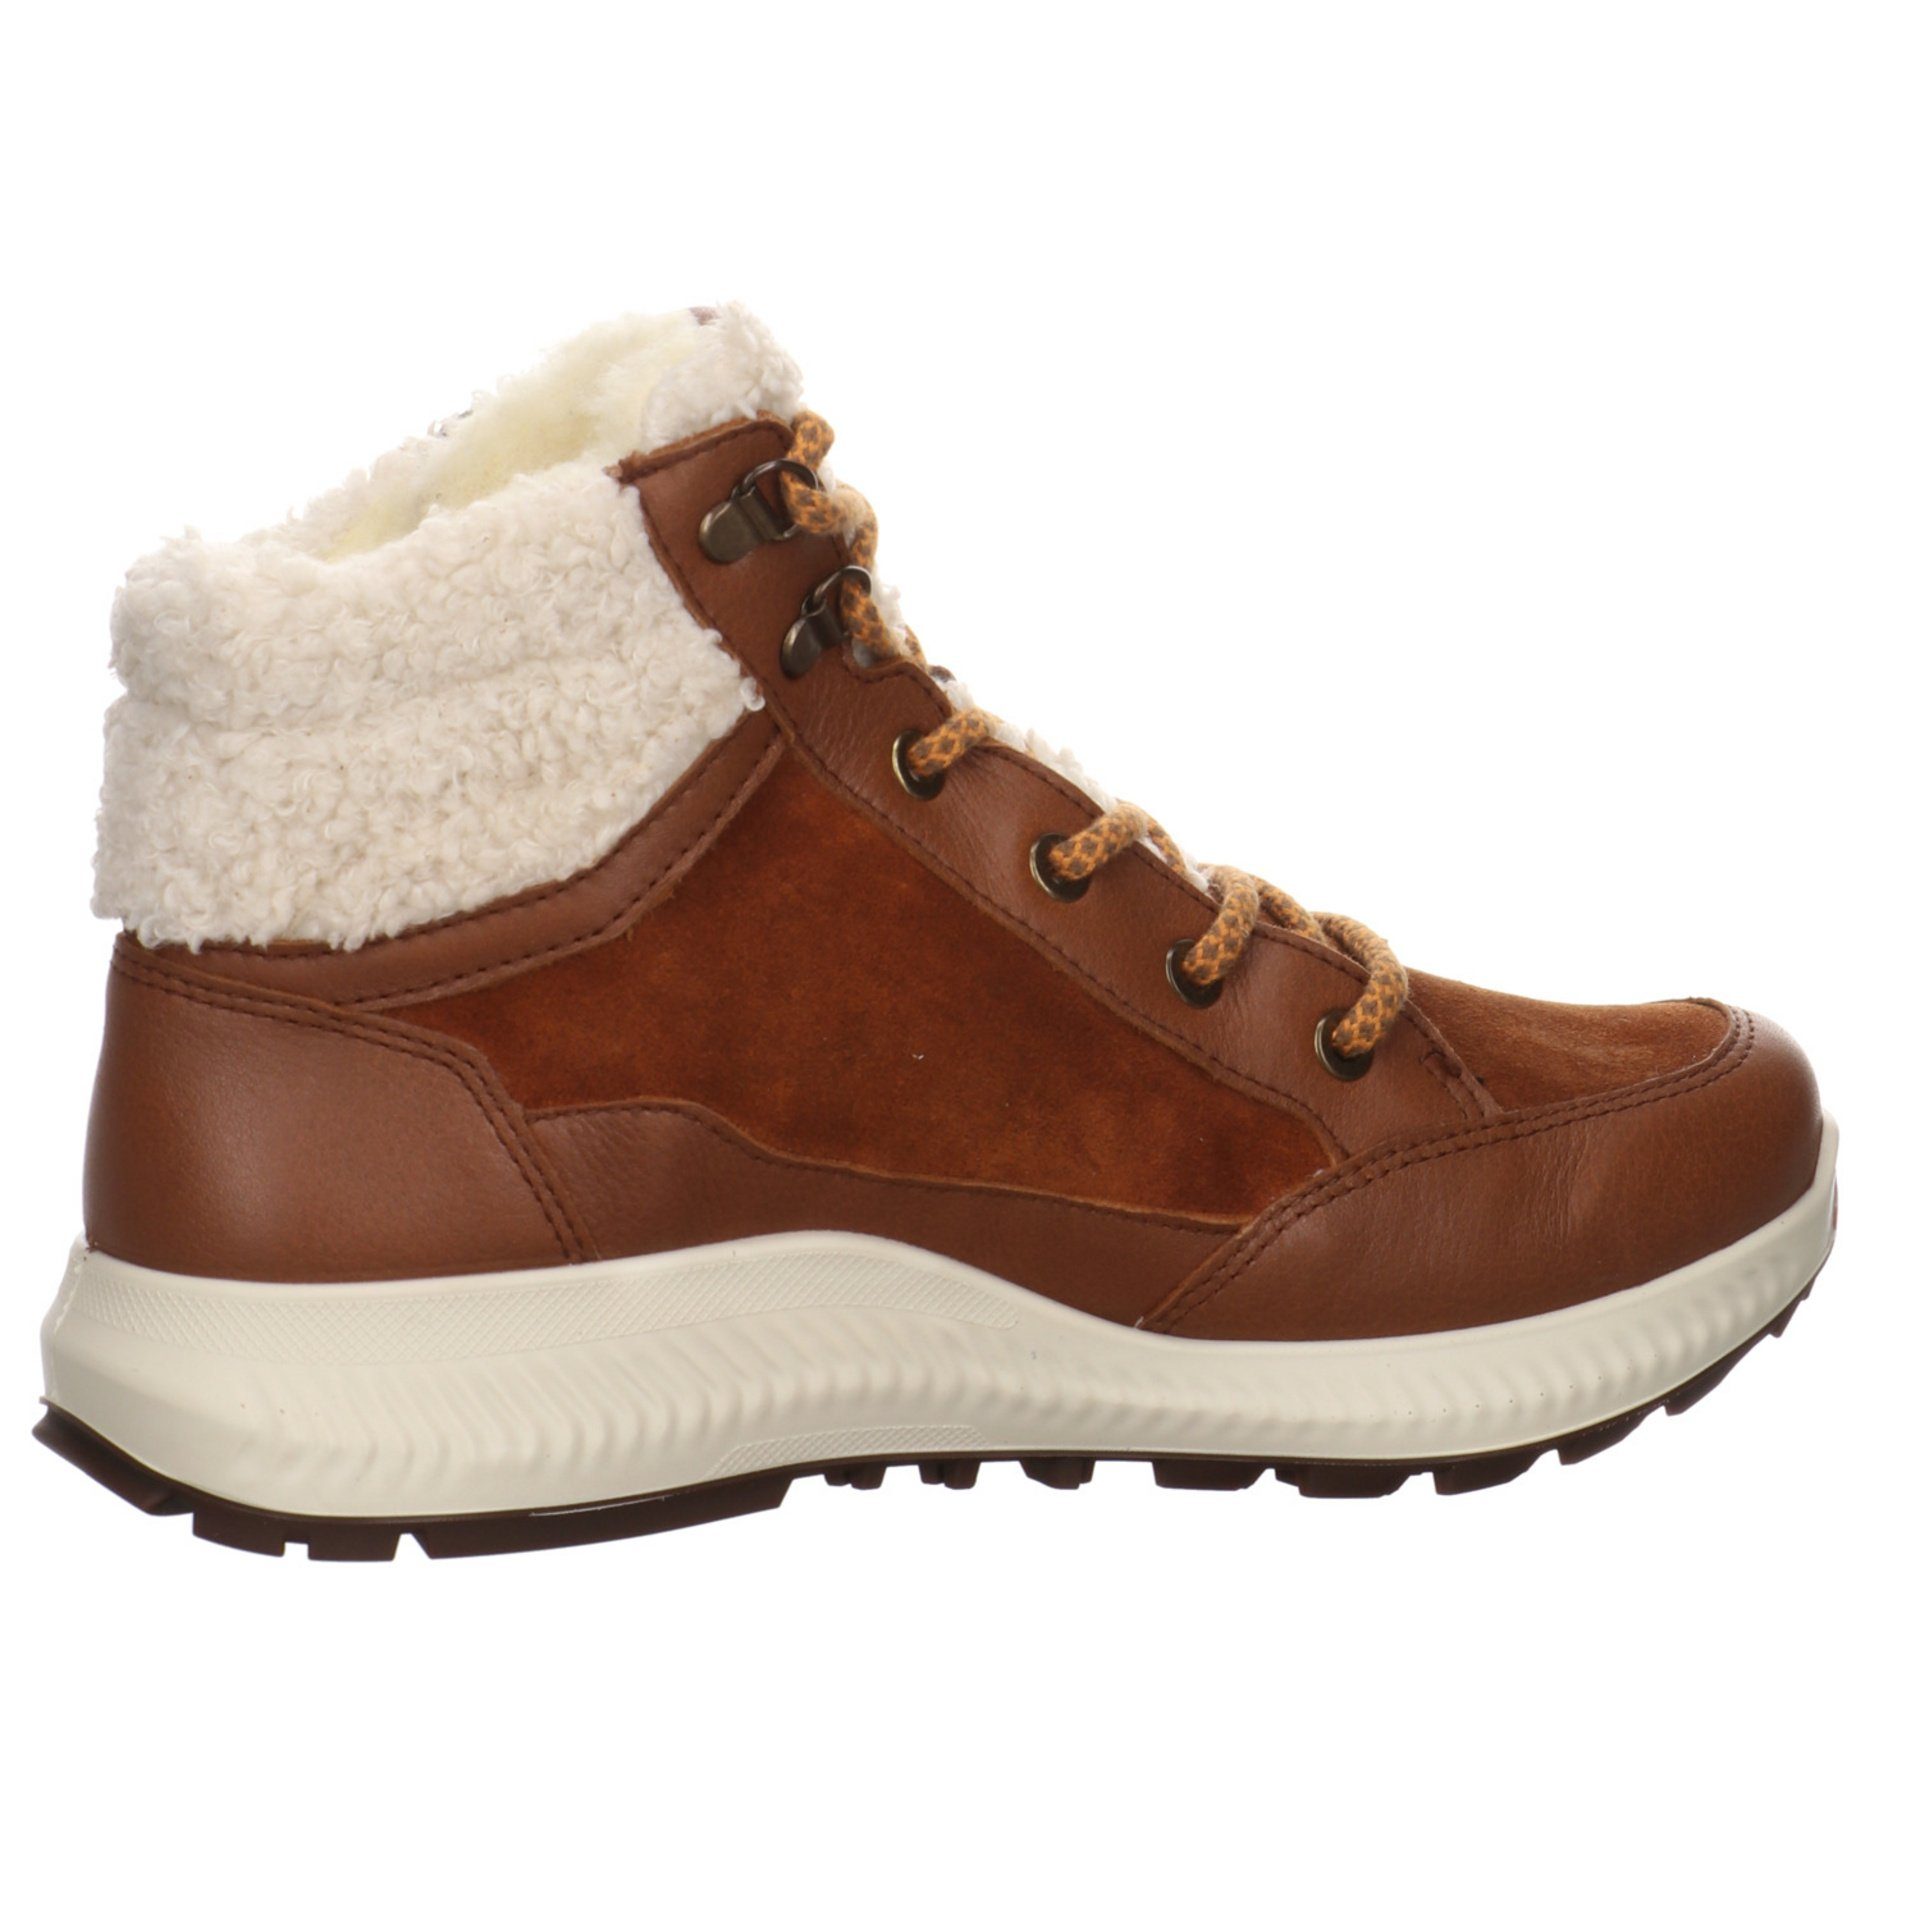 Stiefelette Damen Leder-/Textilkombination Hiker Stiefel Boots braun Elegant 046745 Ara Freizeit Schuhe